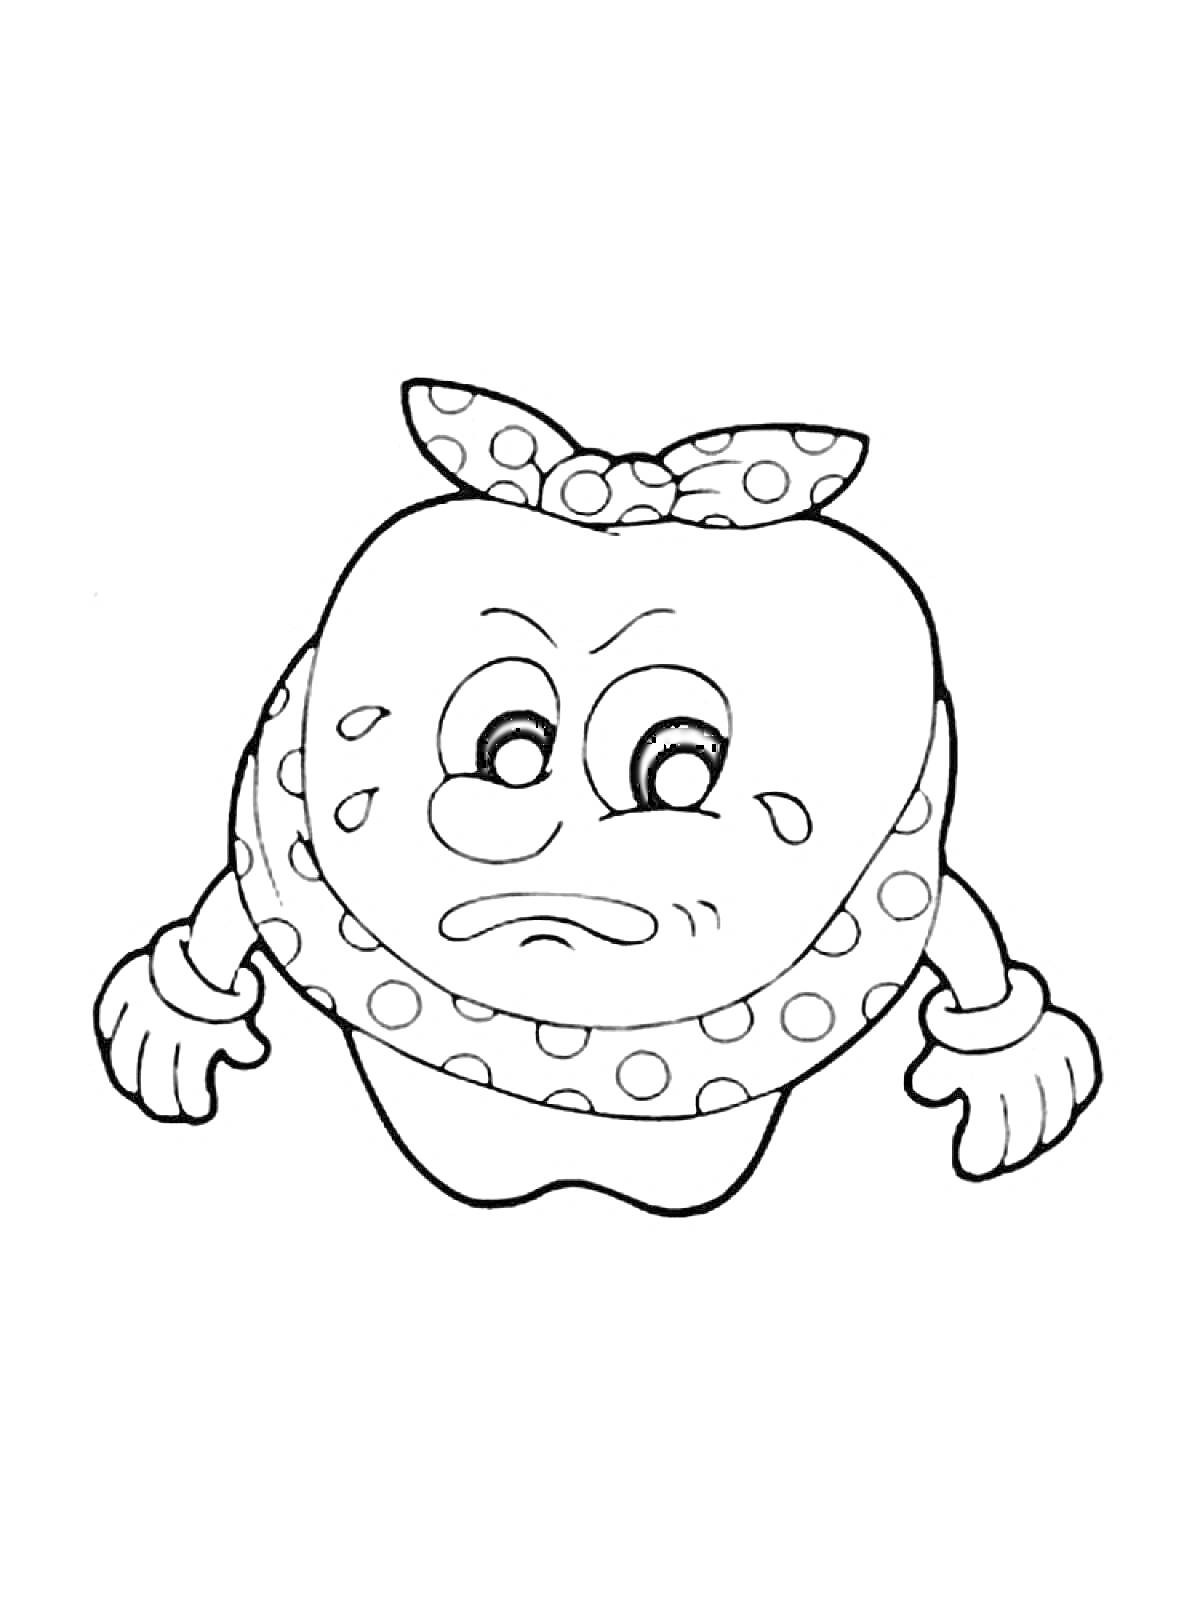 Раскраска Раскраска зуб, персонаж с выражением лица, платок на голове в горошек, капли пота, перчатки